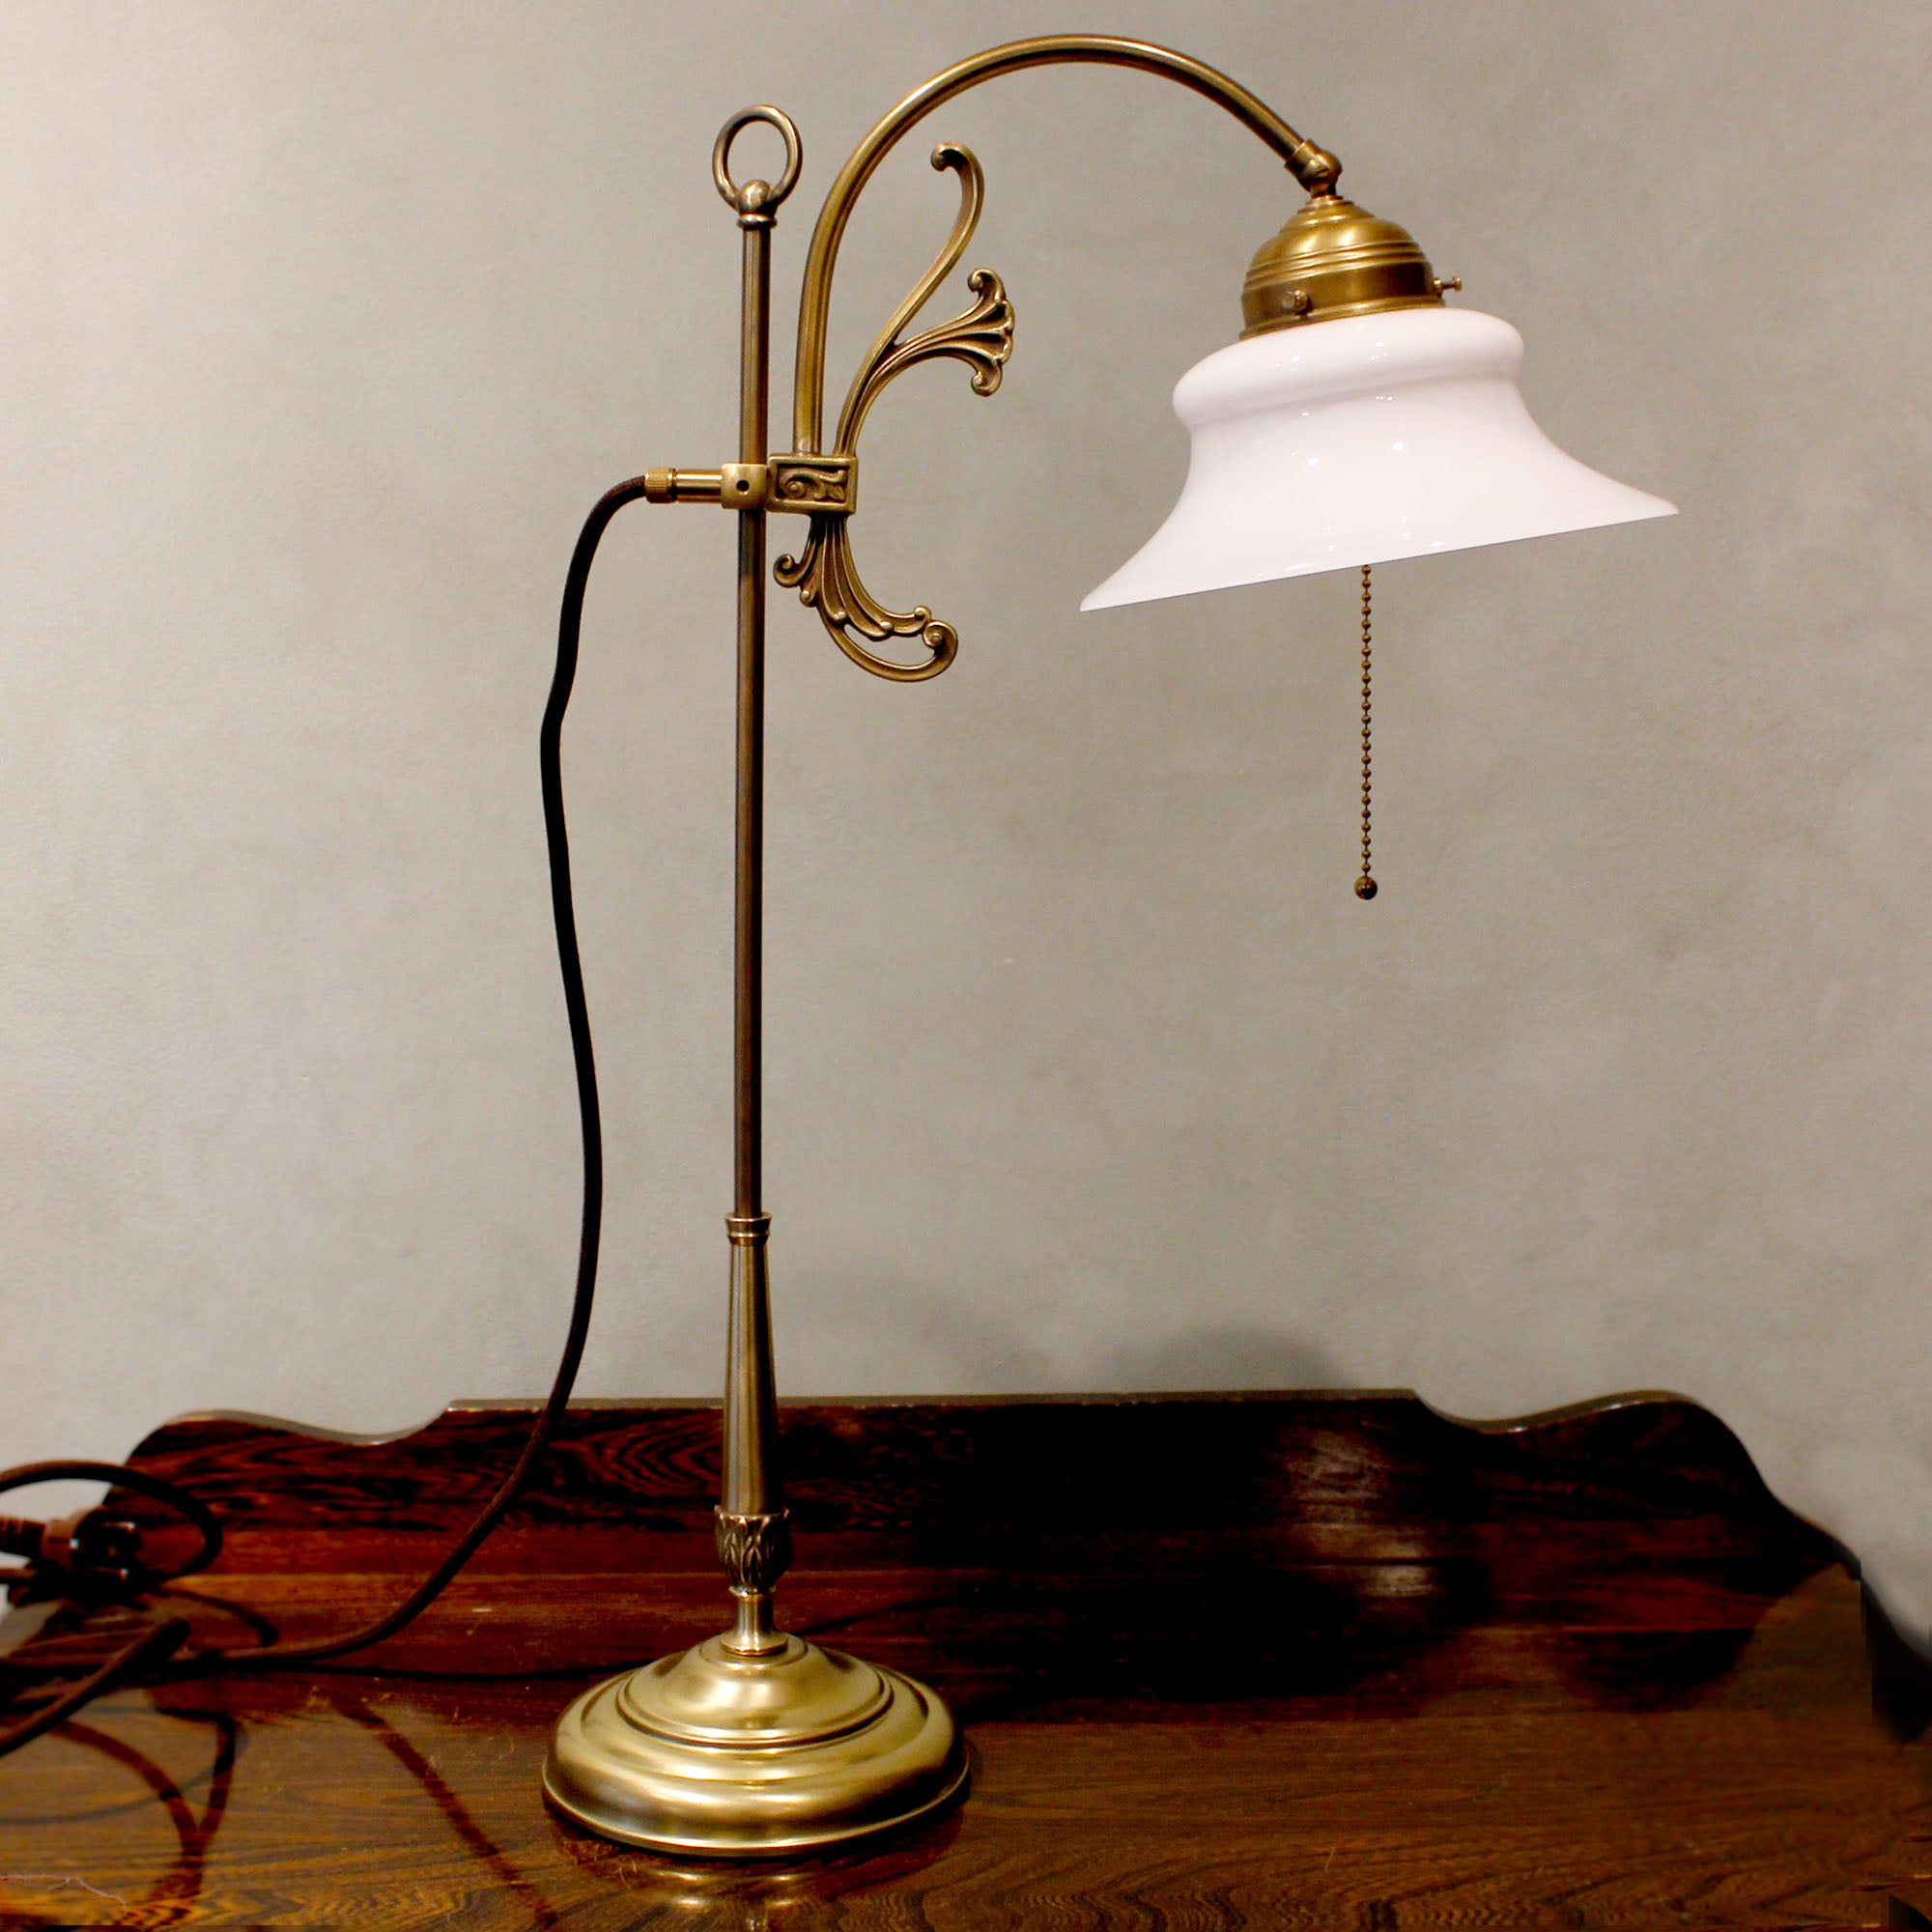 Art Nouveau Table Lamp "Elegance"